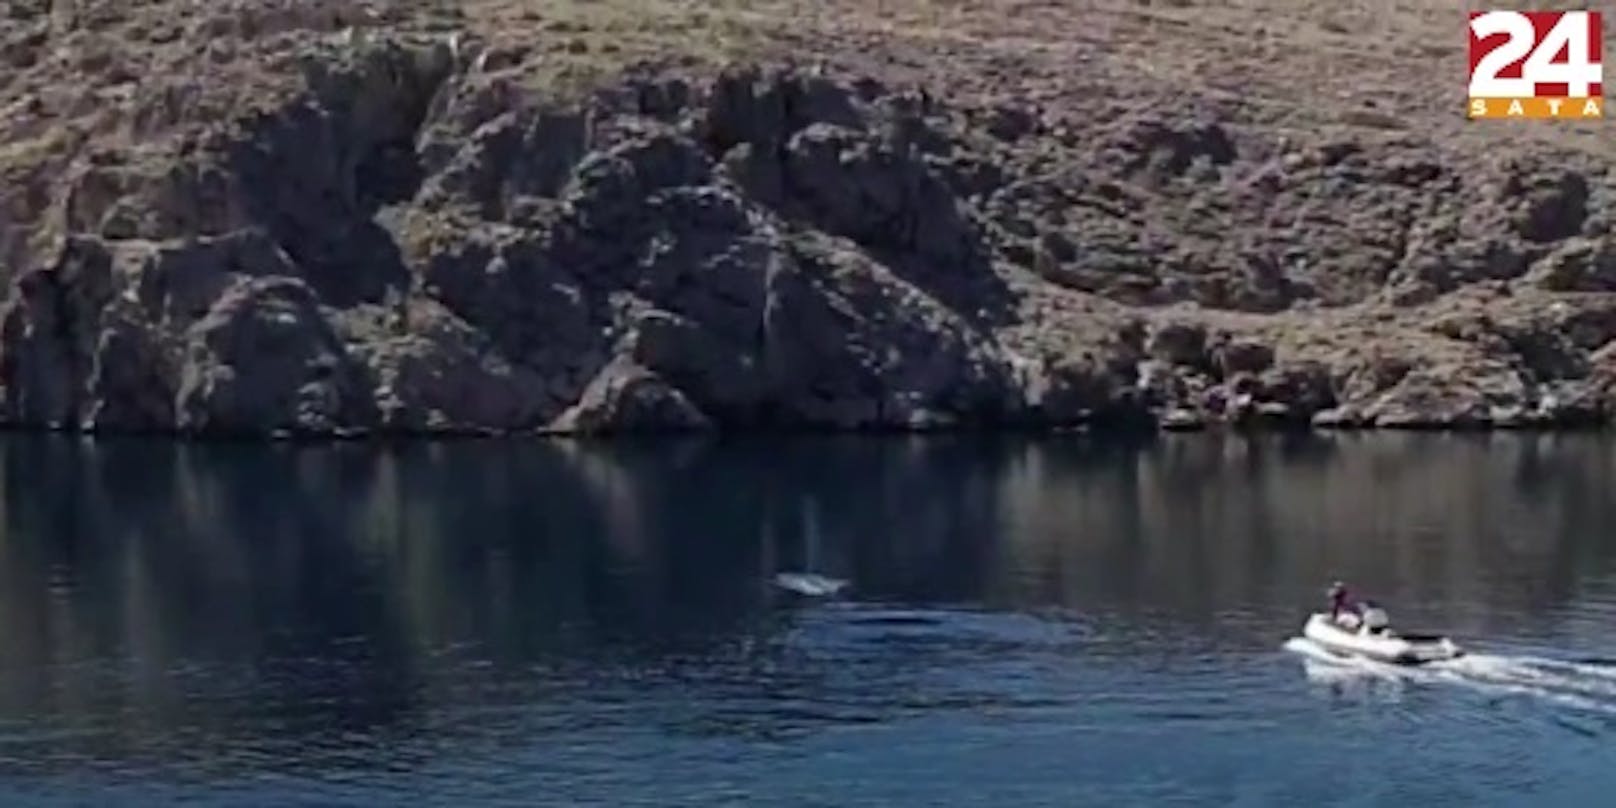 Personen auf dem zwölf Meter langen Motorboot feuerten Schüsse auf den Wal ab. Der Vorfall wurde von dem Leser auf Video festgehalten.<br>